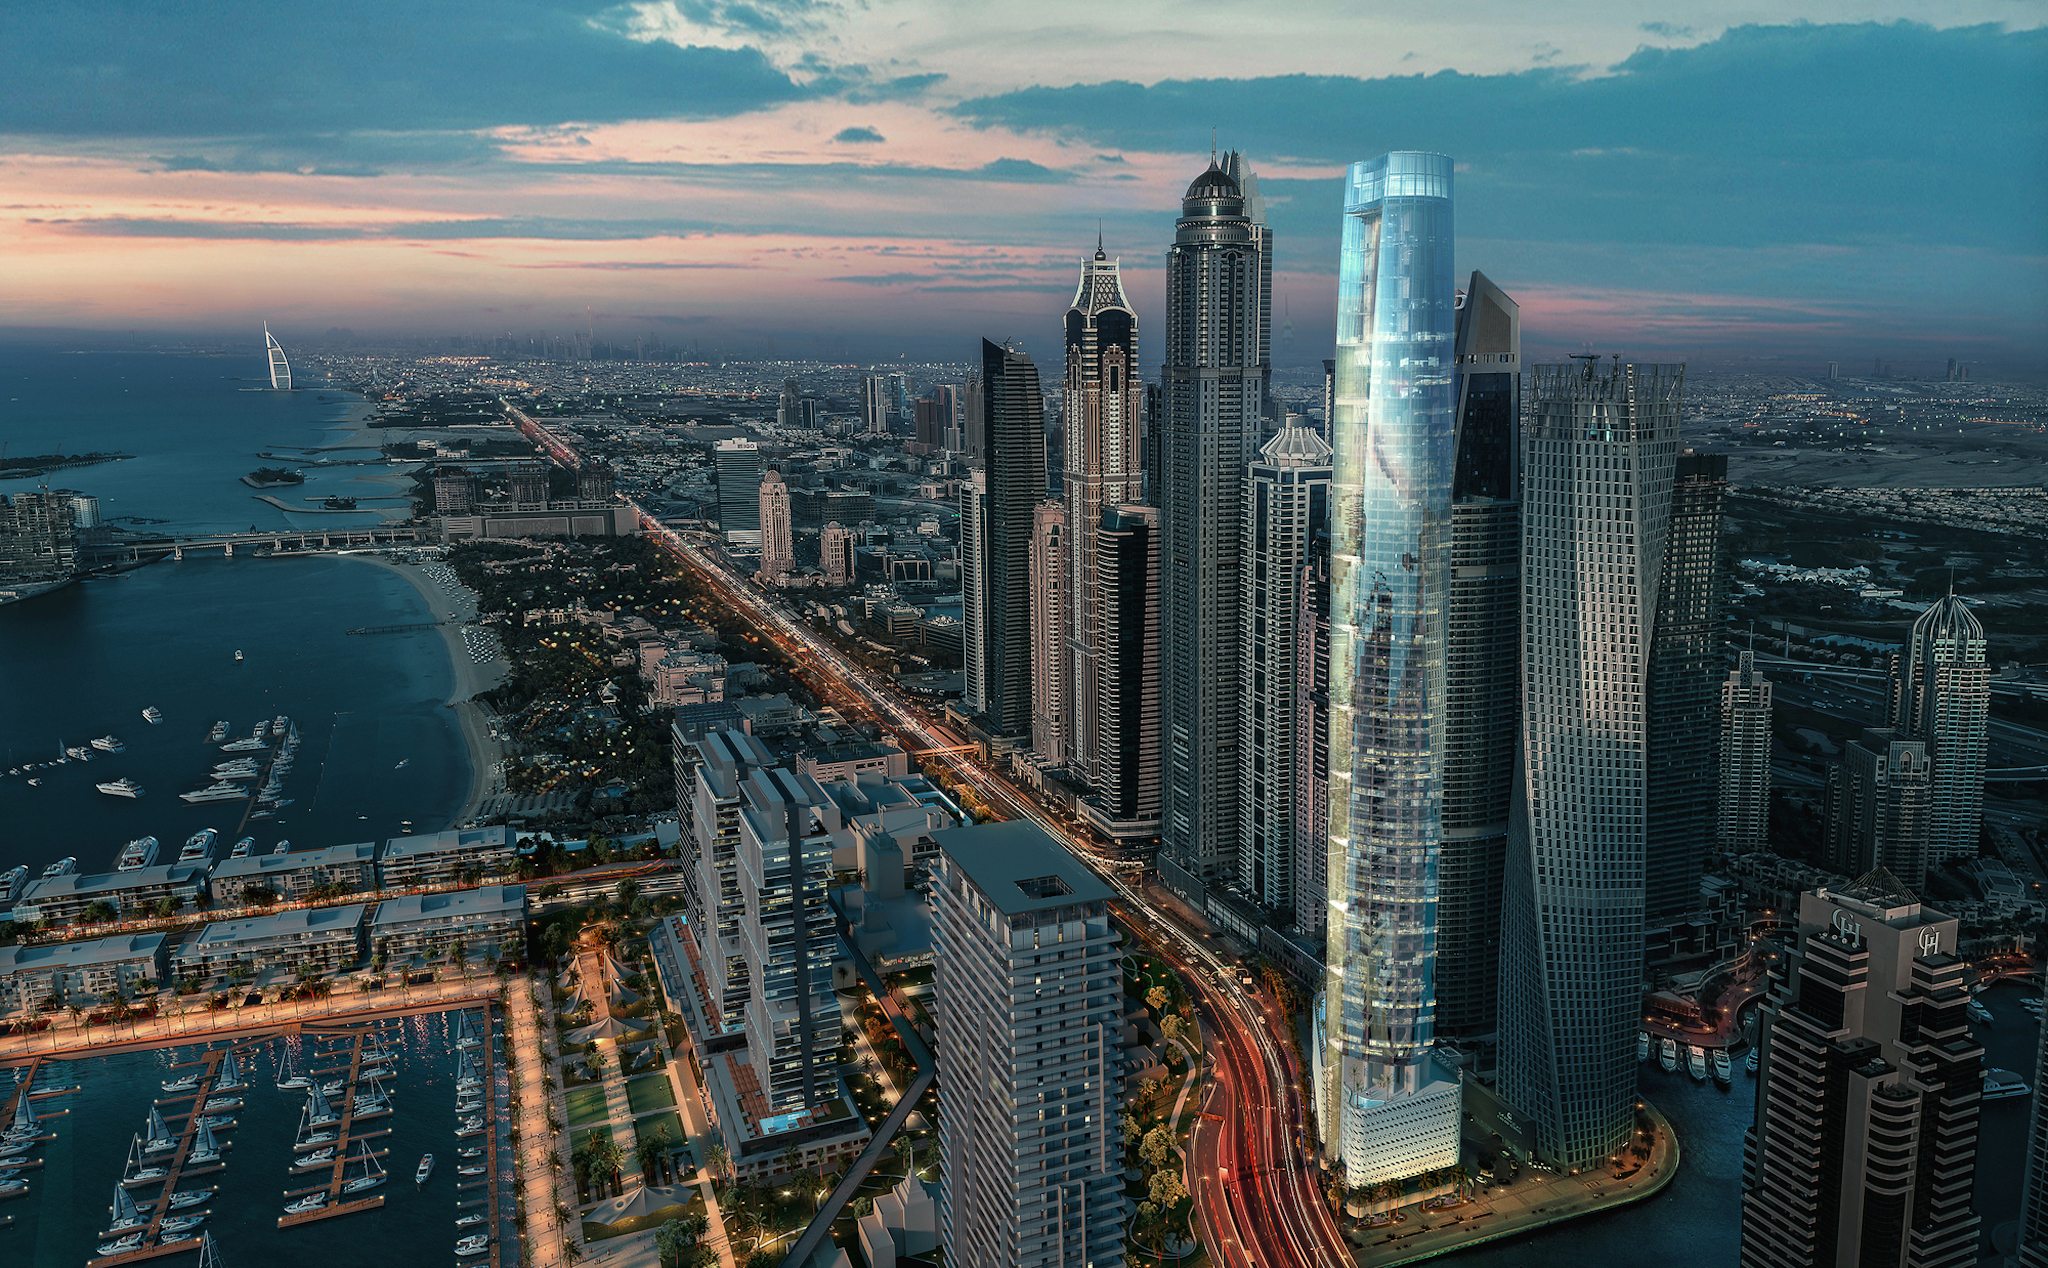 Khách sạn cao nhất thế giới ở Dubai đã đạt 50% tiến độ xây dựng, dự kiến mở cửa cuối năm 2023